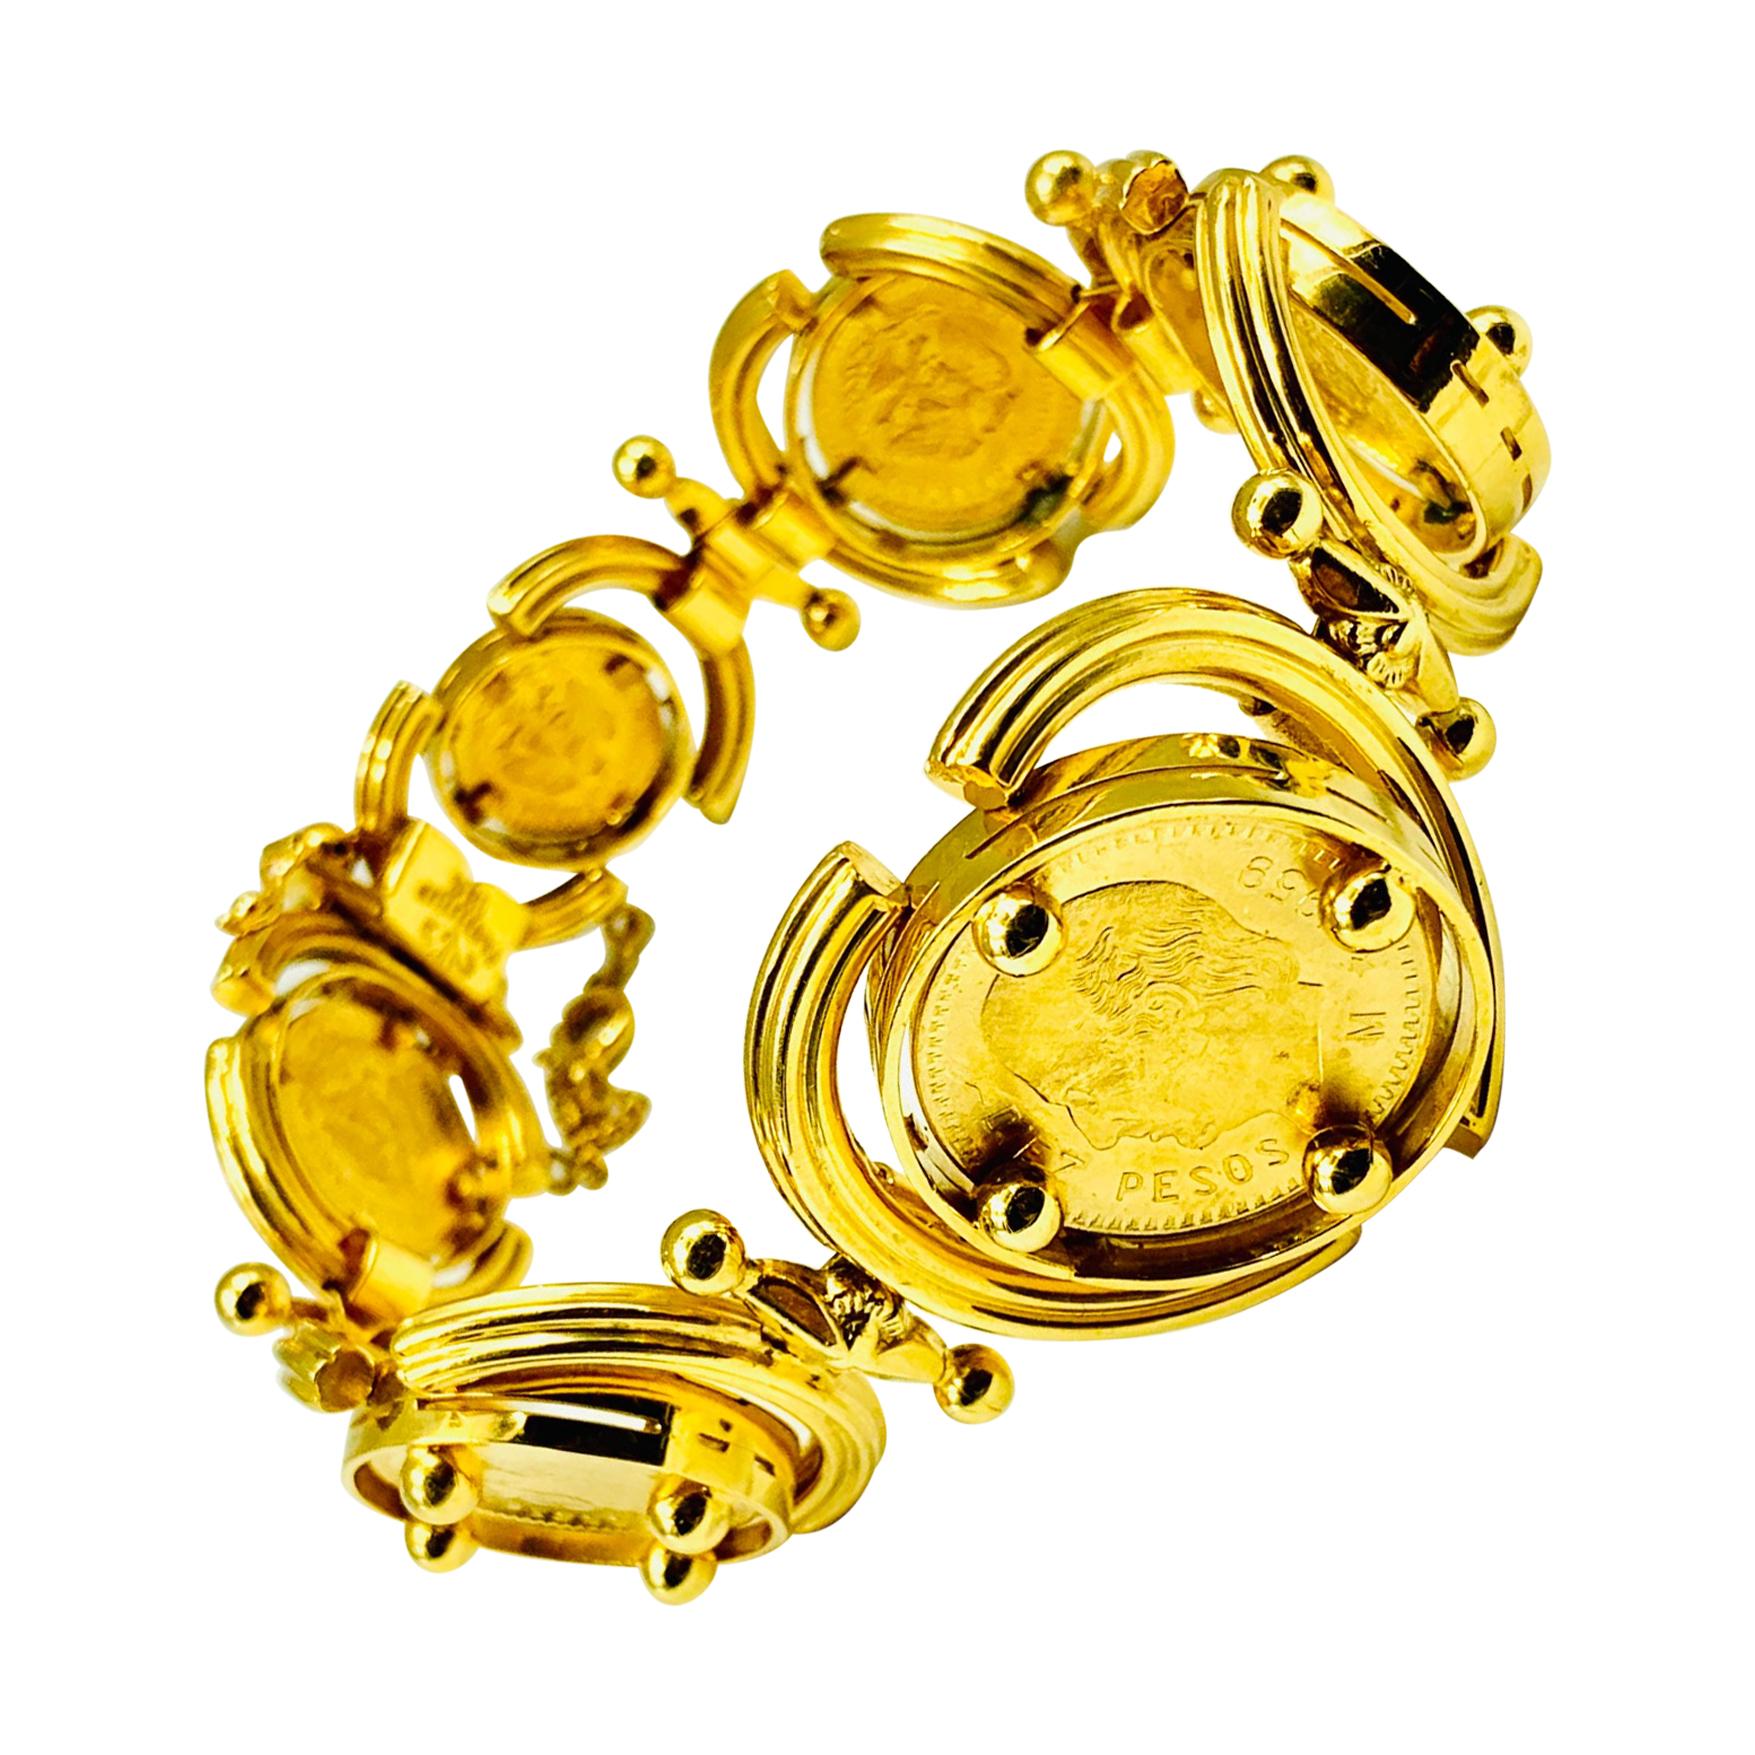 Fabuleux bracelet en pièces d'or à haut carat composé de six pièces d'or 24 carats graduées et serties dans une inhabituelle monture articulée en or 18 carats. Ce design intéressant permet d'attirer l'attention sur le mouvement des pièces